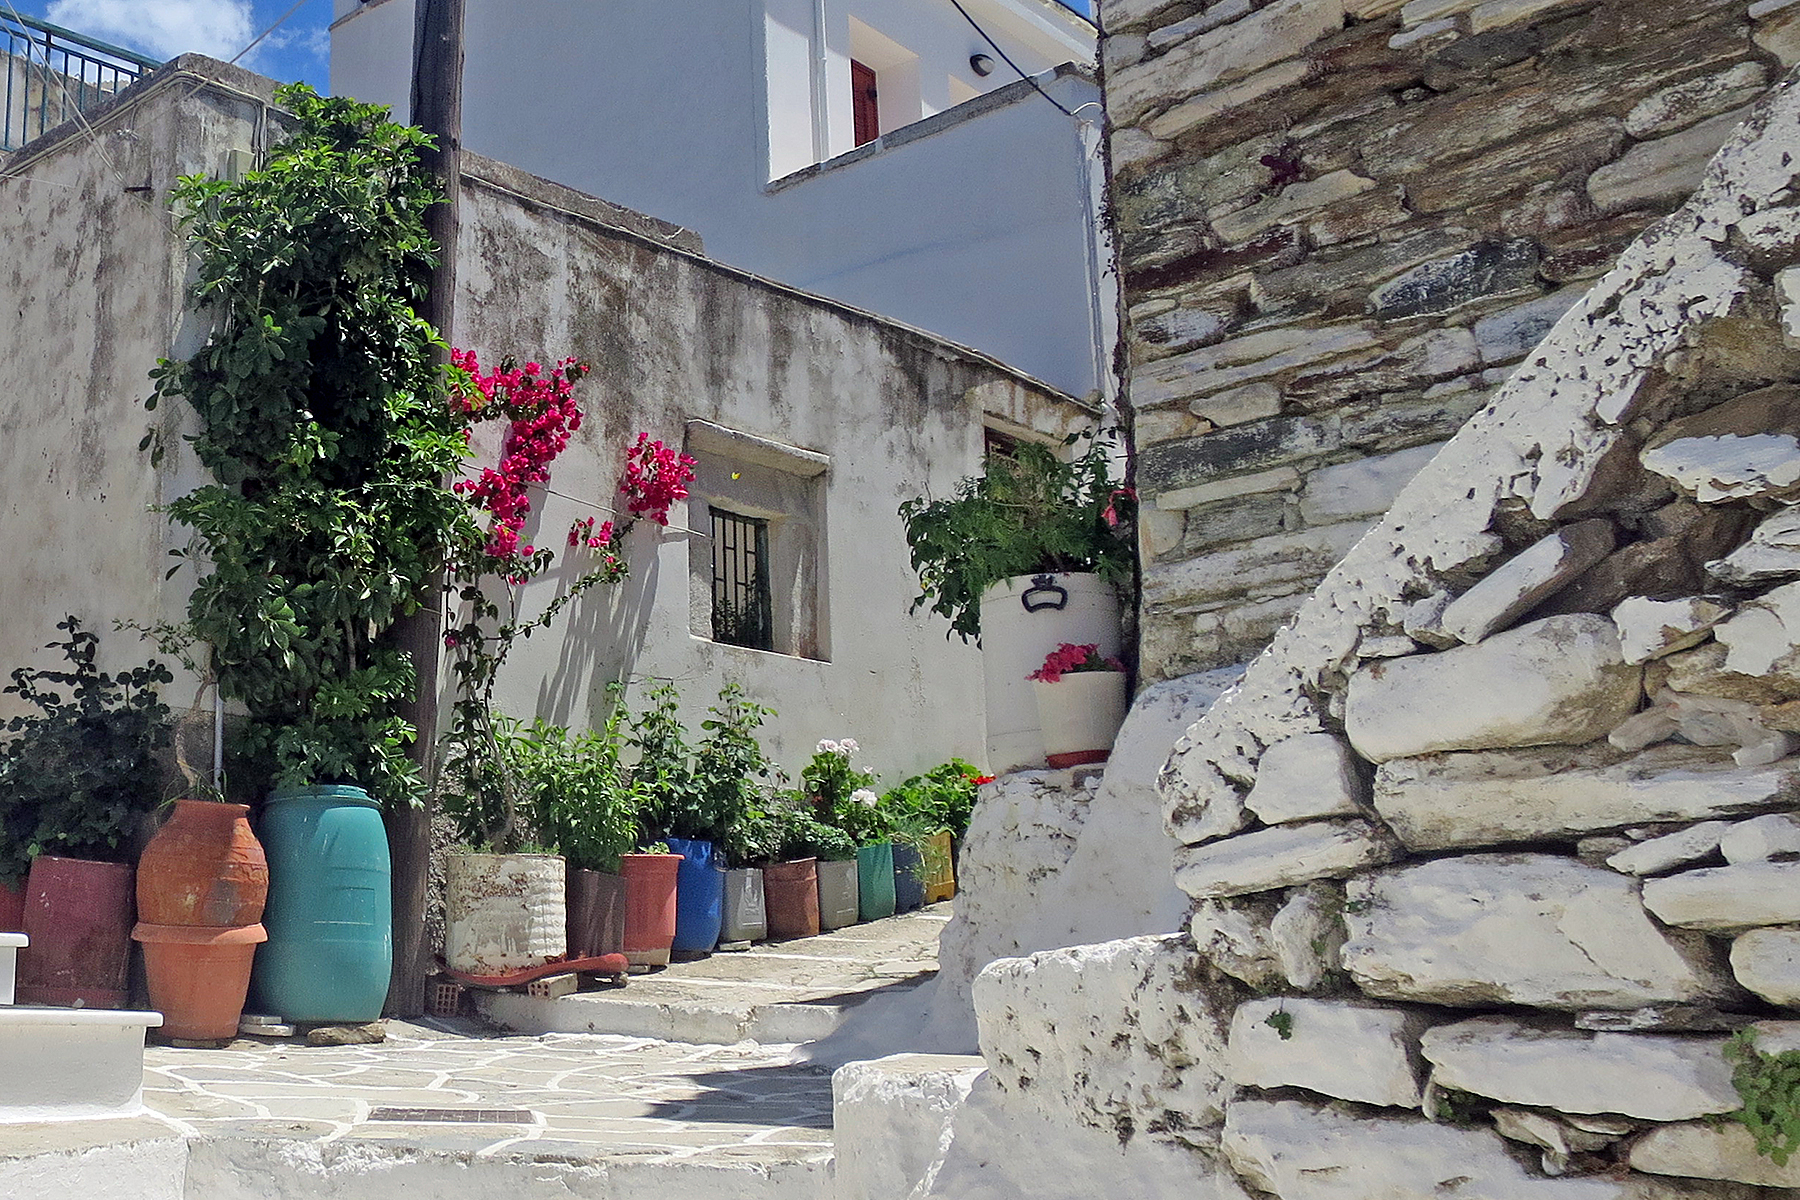 Kykladeninsel Naxos: Urlaub machen, wo Götter einst Geschichten erzählten